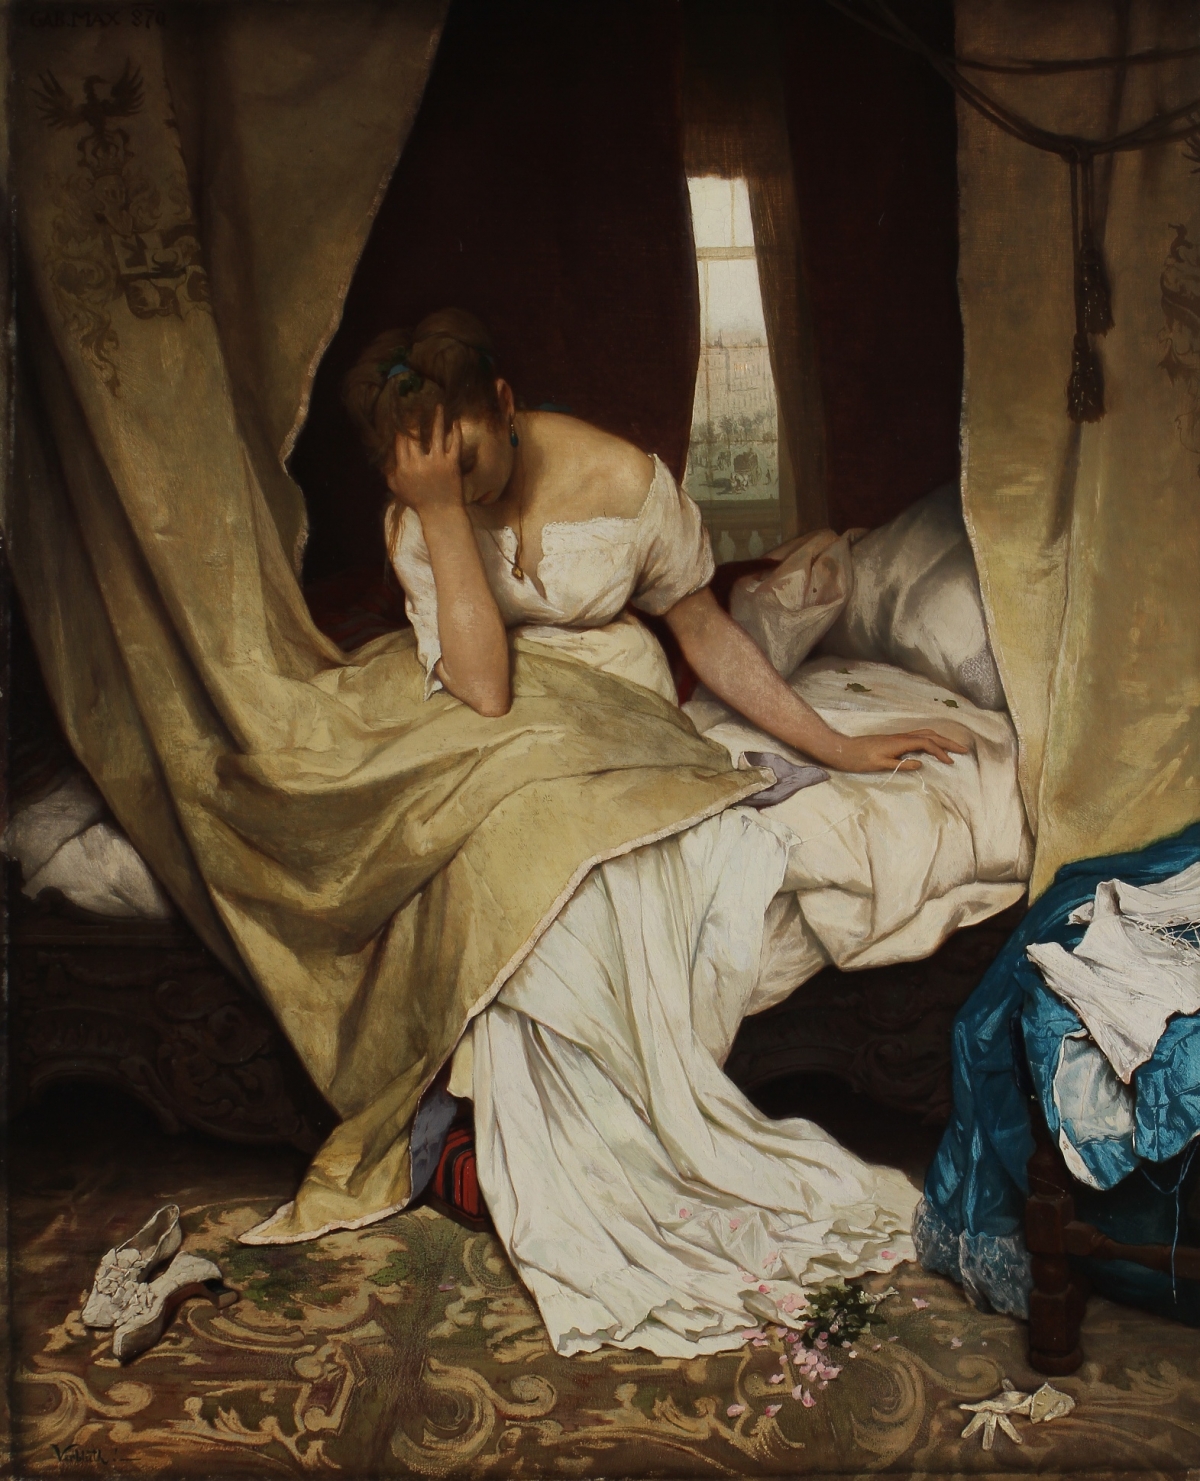 Gabriel von Max, Fadding away, 1870, oil on canvas, Inv. nr. O00205